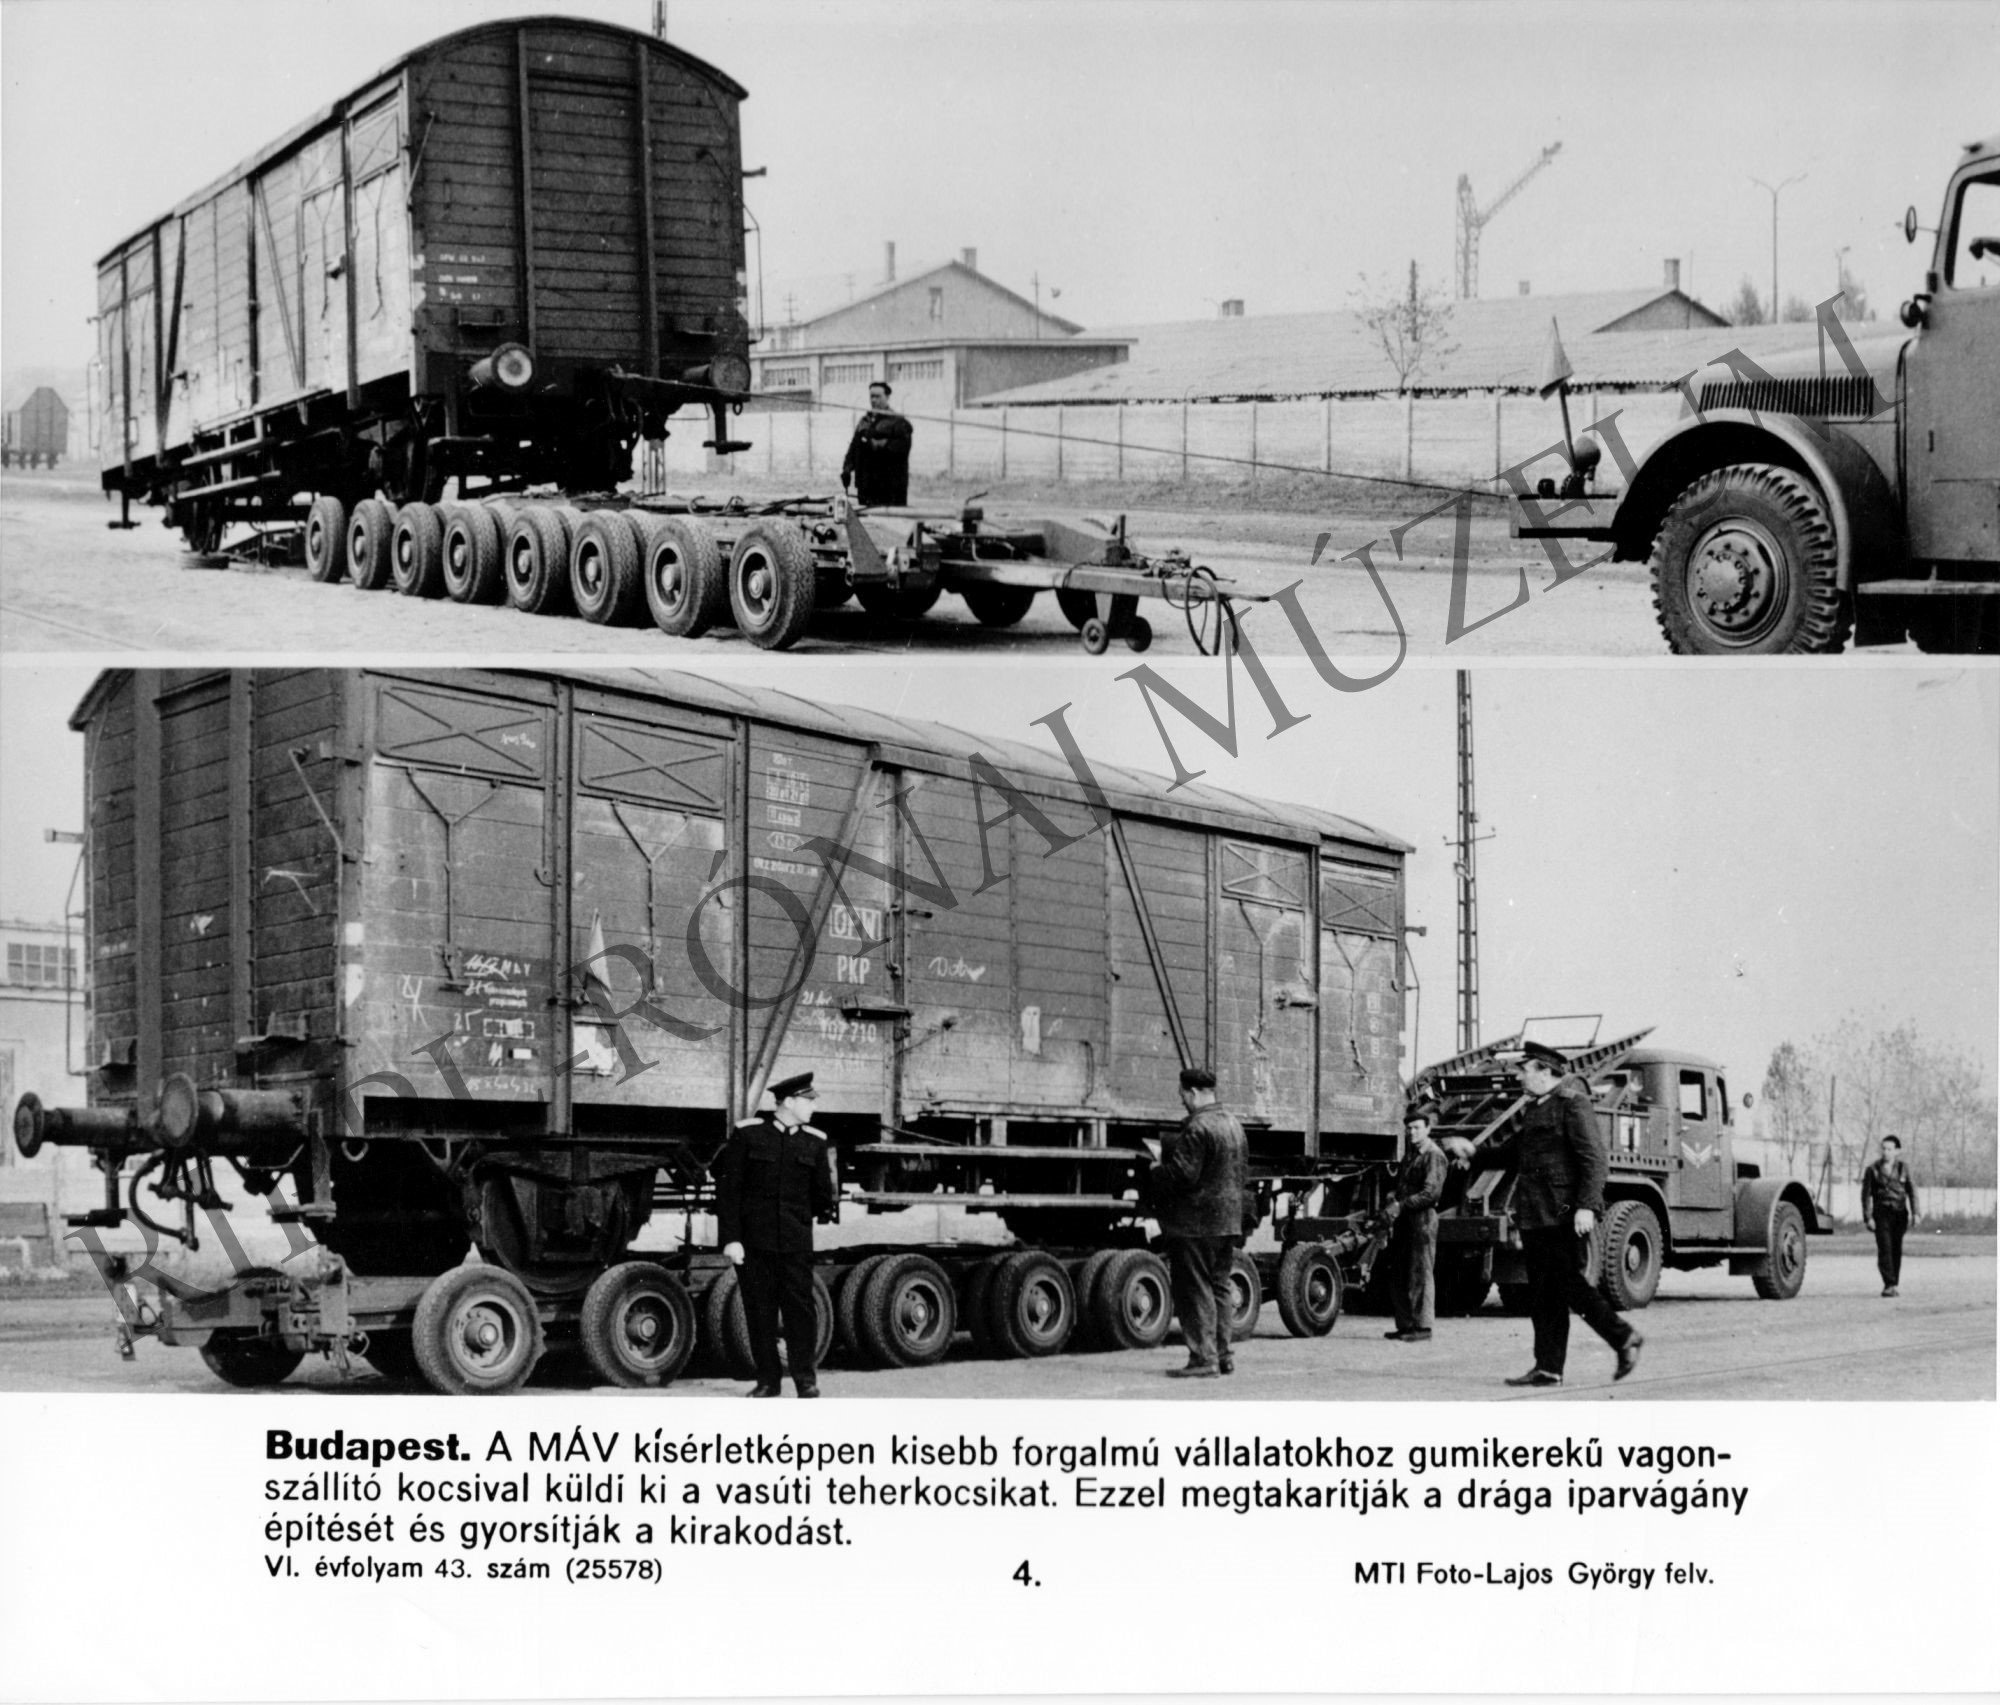 A MÁV vasúti teherkocsikat kísérletképpen gumikerekű vagonszállító kocsival küldi a kisebb vállalatokhoz (Rippl-Rónai Múzeum CC BY-NC-SA)